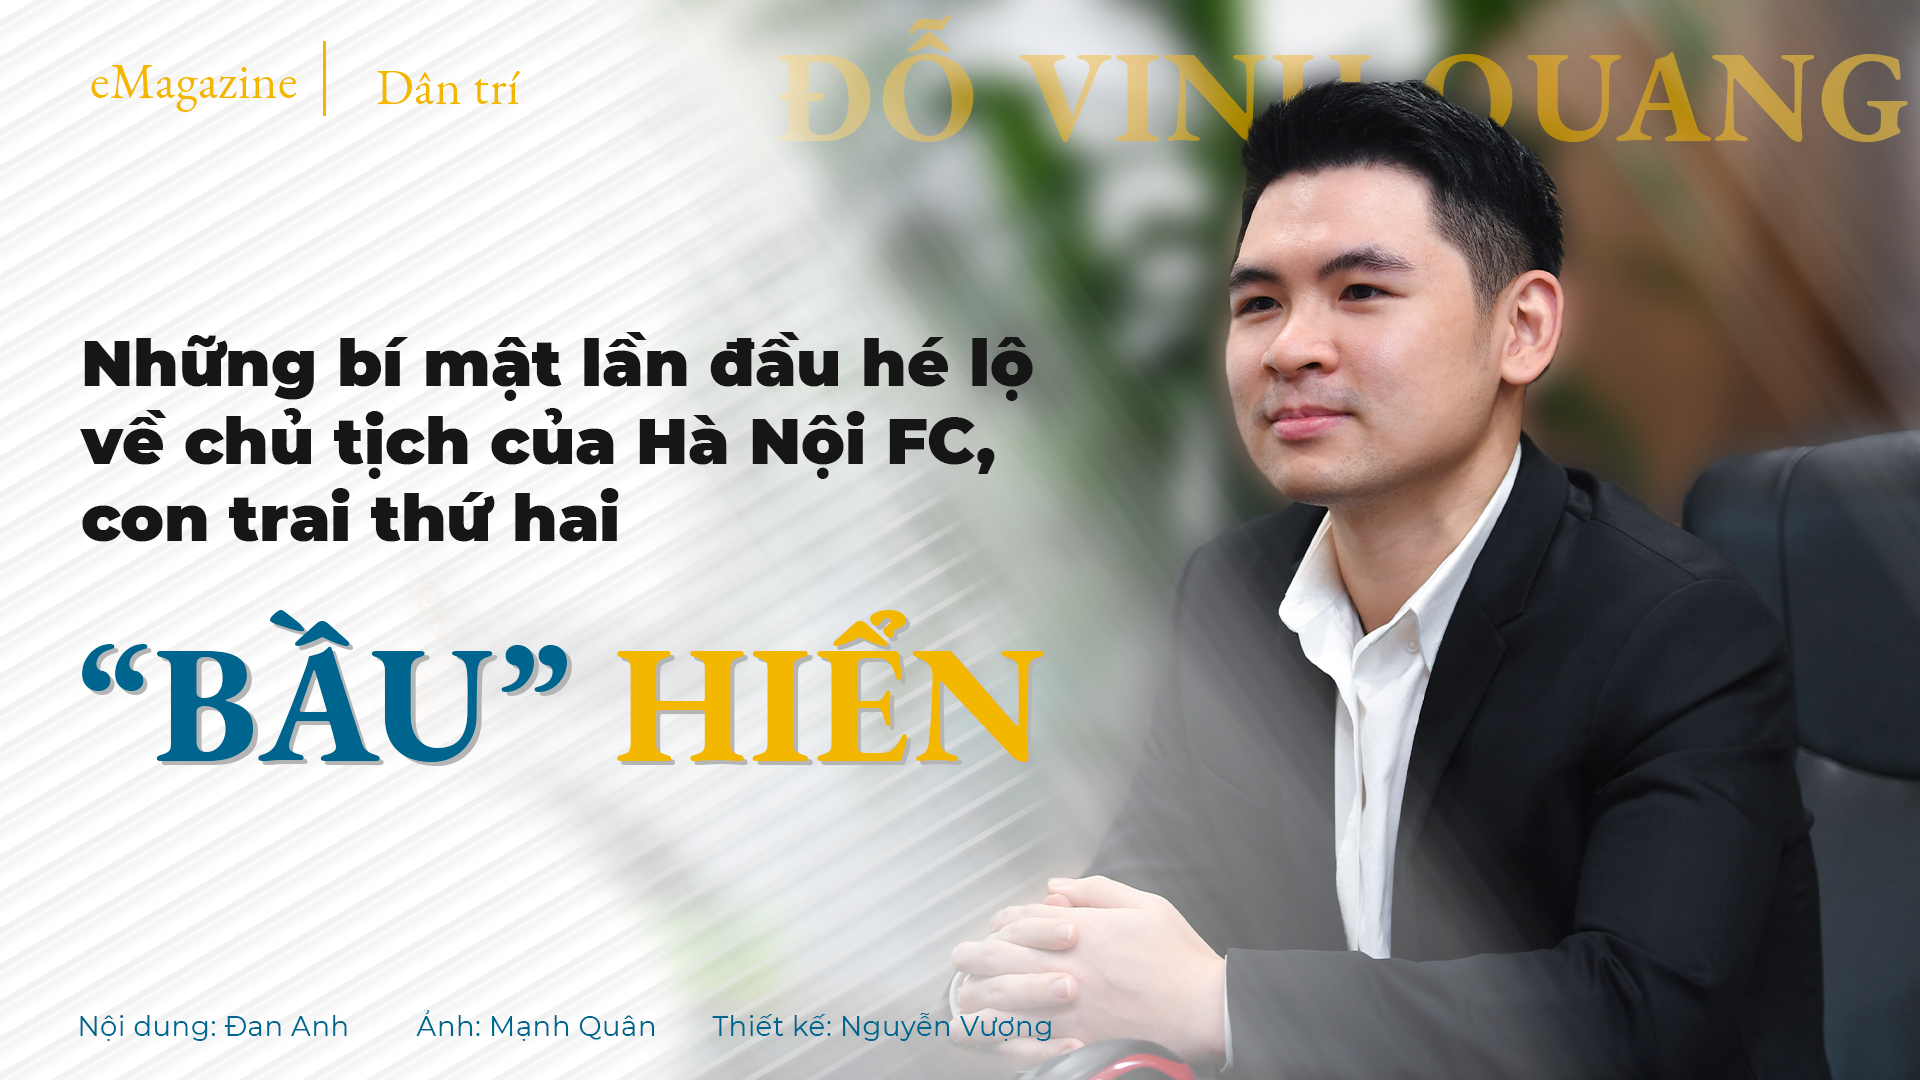 Những bí mật lần đầu hé lộ về Chủ tịch Hà Nội FC, con thứ hai "bầu" Hiển